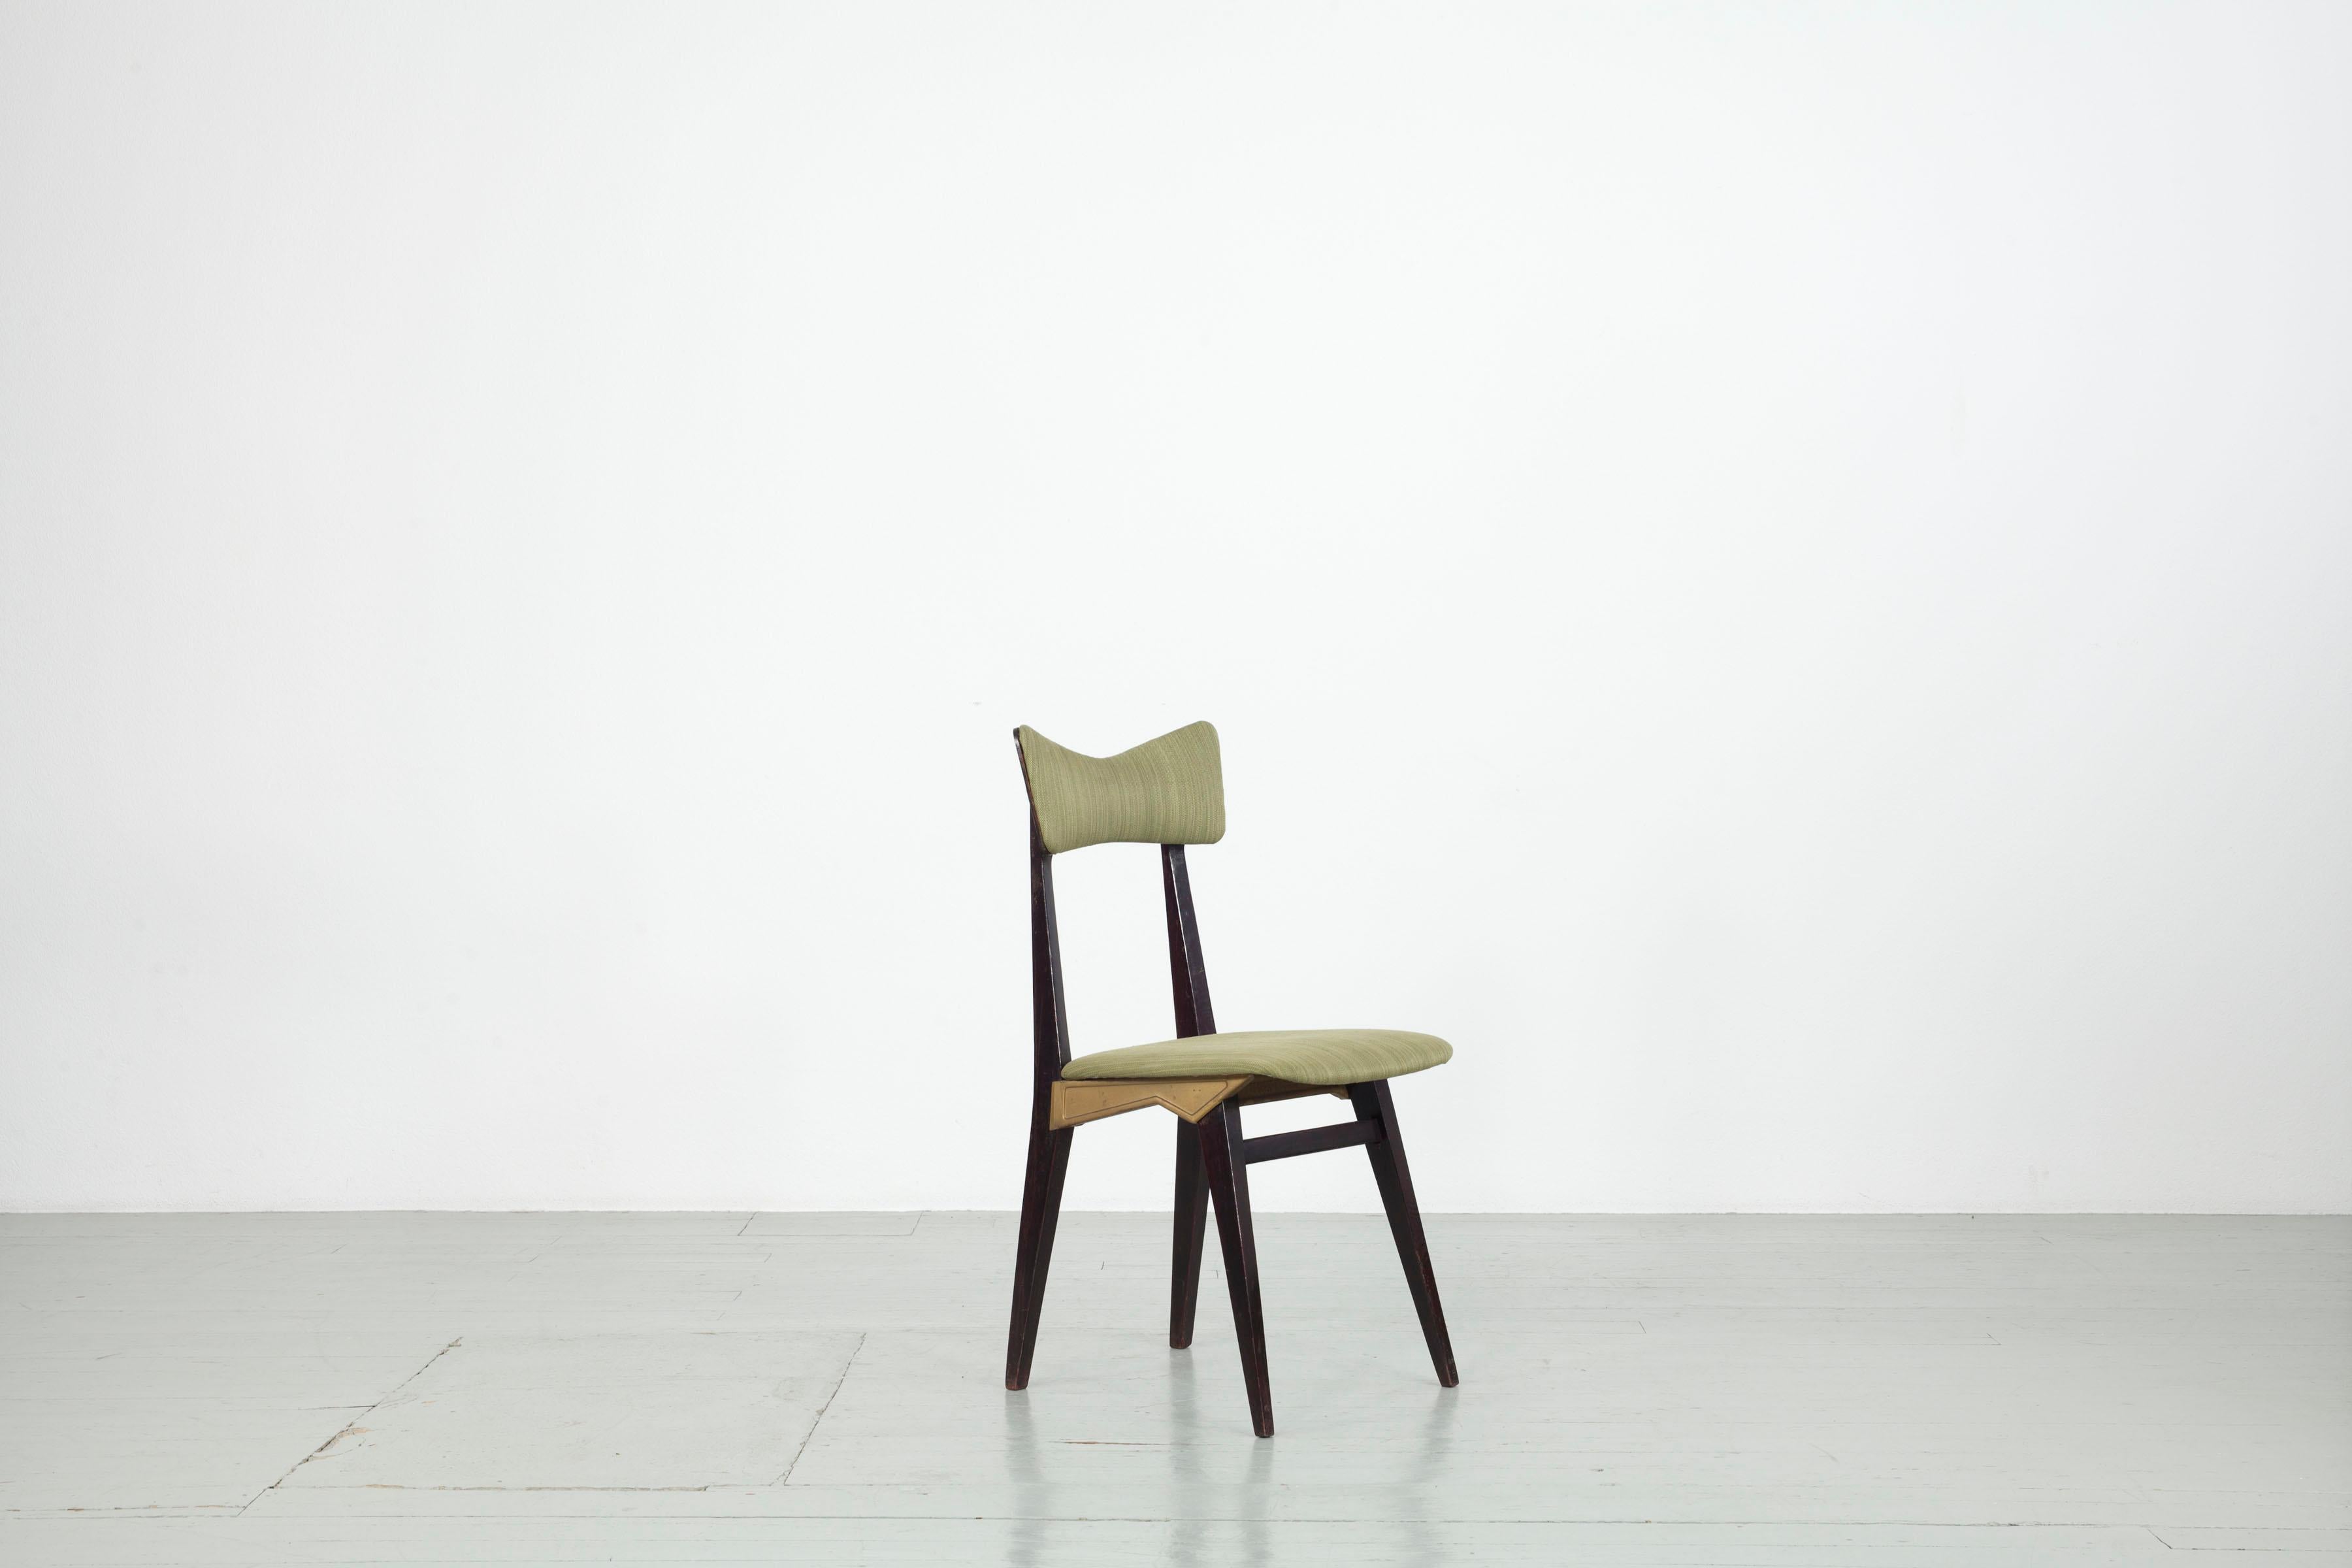 Cet ensemble de cinq chaises a été fabriqué en Italie dans les années 1950. Le dessin du fabricant Francor Ospitaletto est similaire à un dessin d'Ico Parisi (Ariberto Colombo). Les chaises sont fabriquées en bois de rose teinté foncé et en fonte